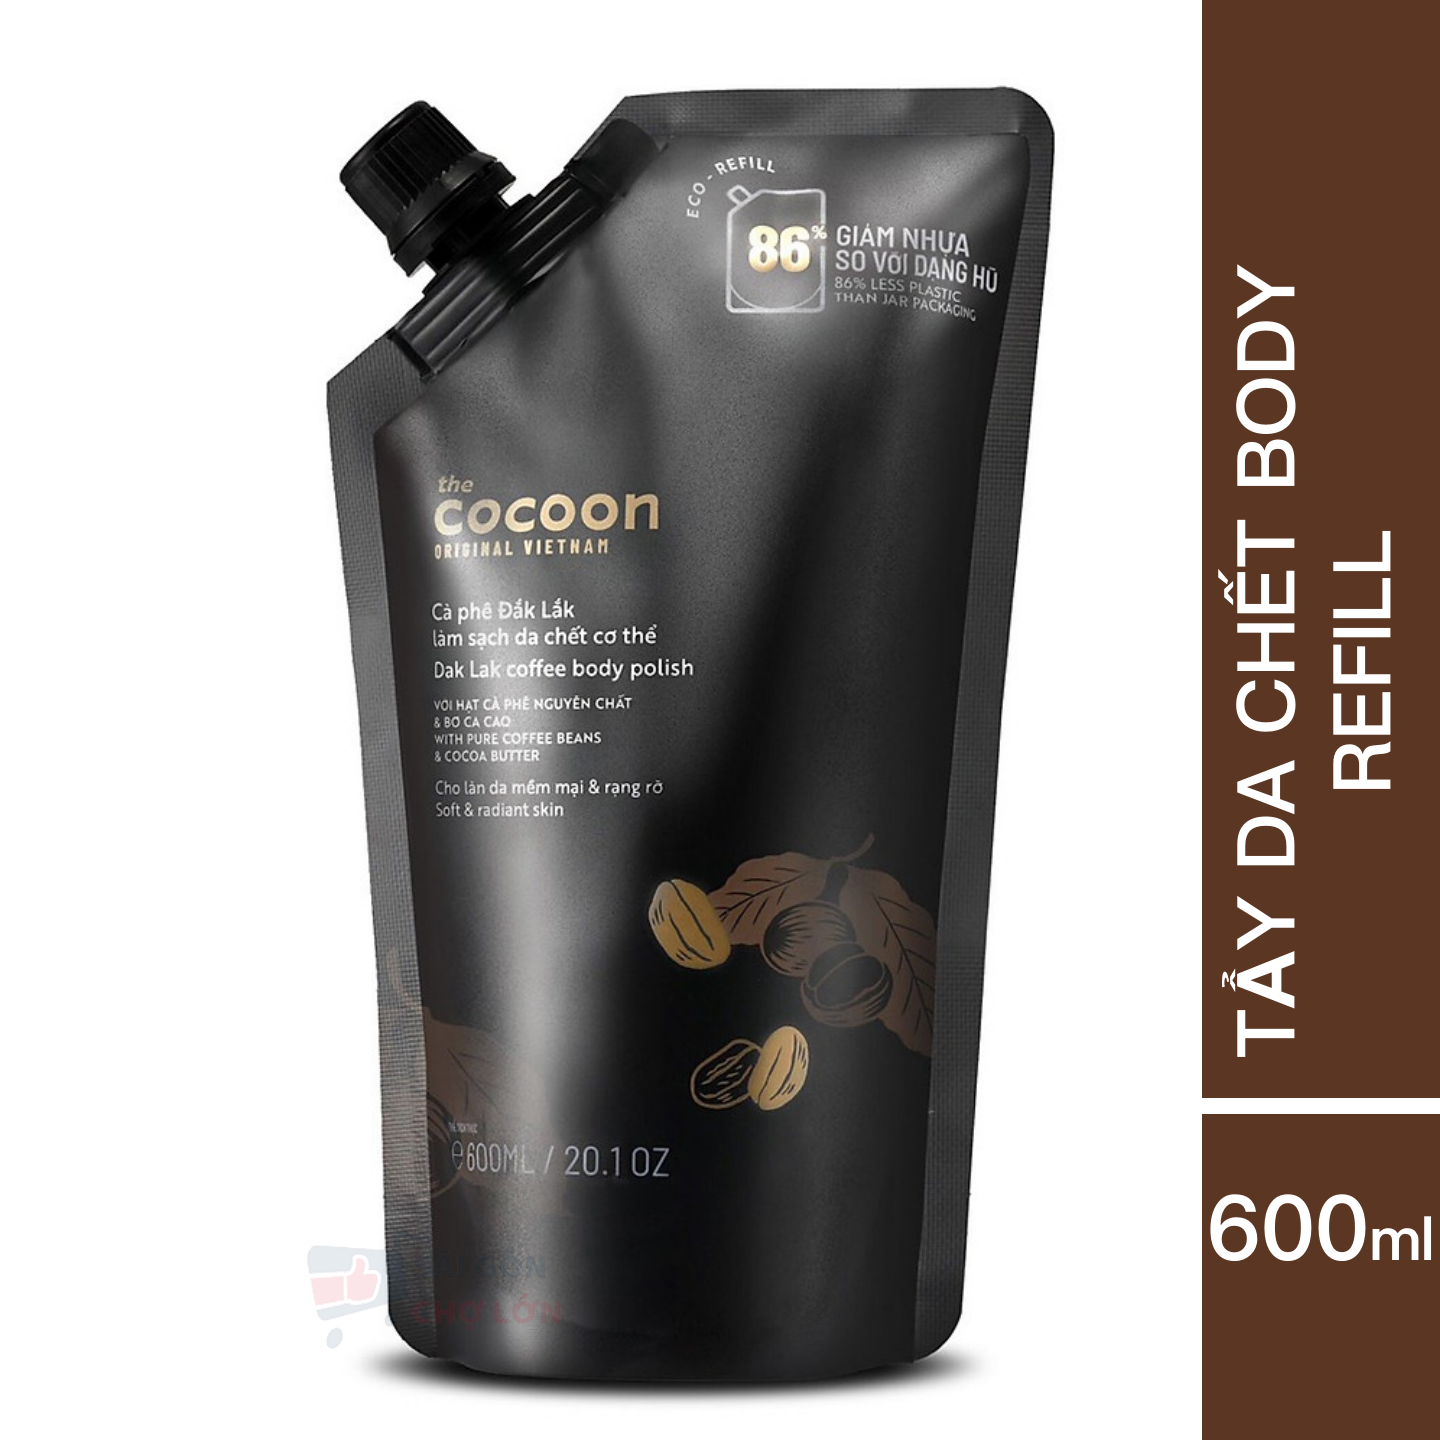 Túi Refill Cà phê Đắk Lắk làm sạch da chết cơ thể Cocoon cho làn da mềm mại &amp; rạng rỡ 600ml